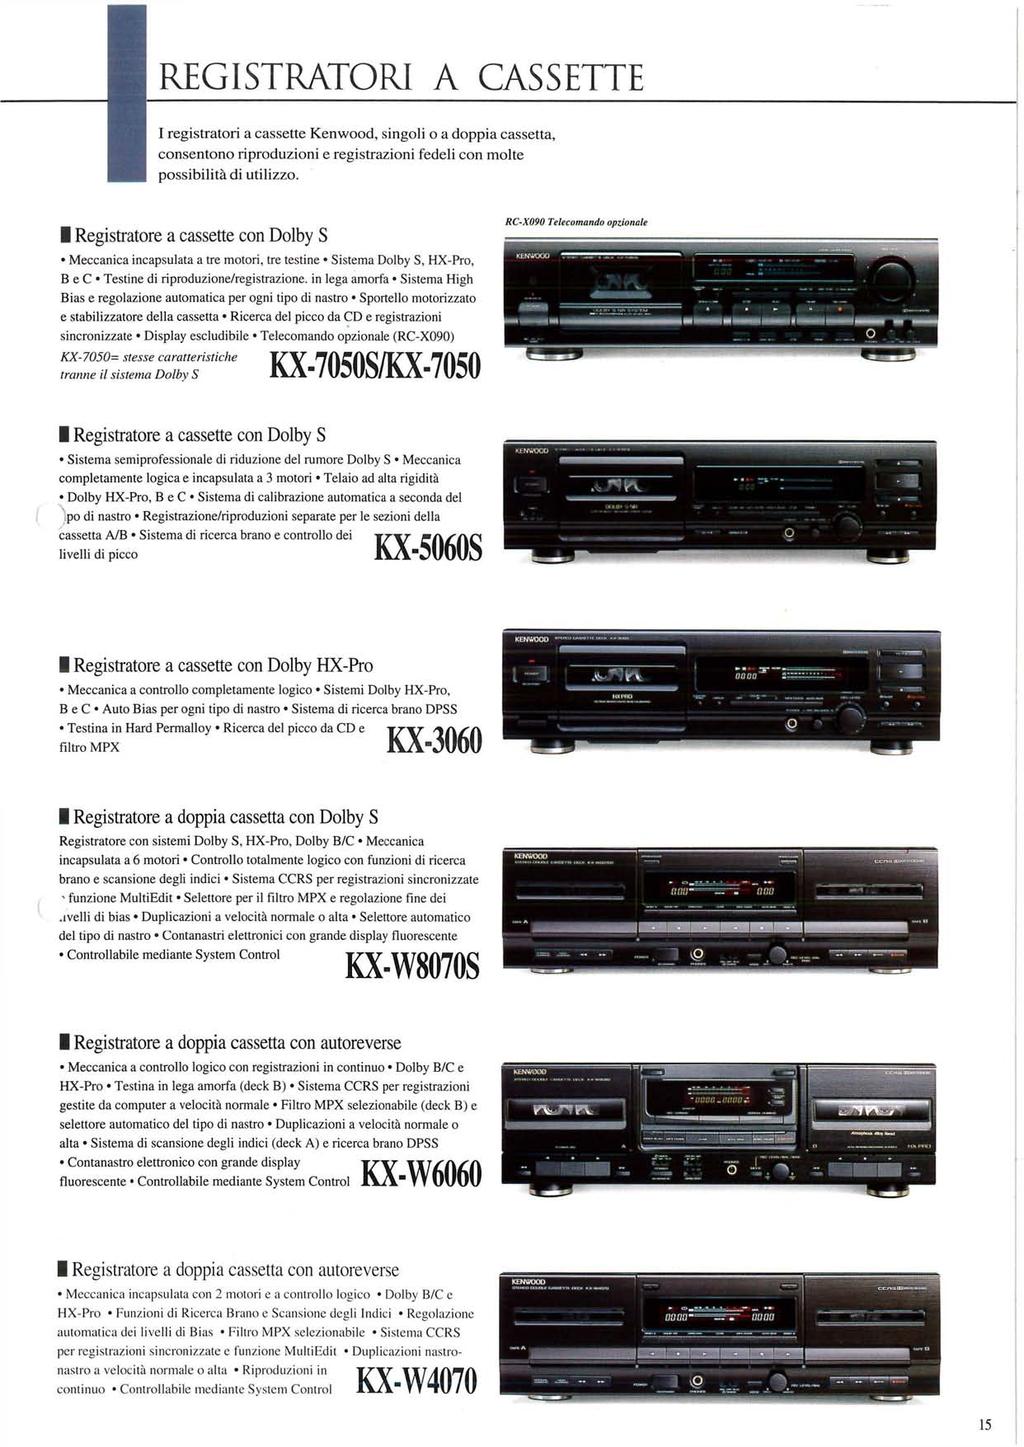 REGISTRATORI A CASSETTE I registratori a cassette Kenwood, singoli o a doppia cassetta, consentono riproduzioni e registrazioni fedeli con molte possibilità di utilizzo.